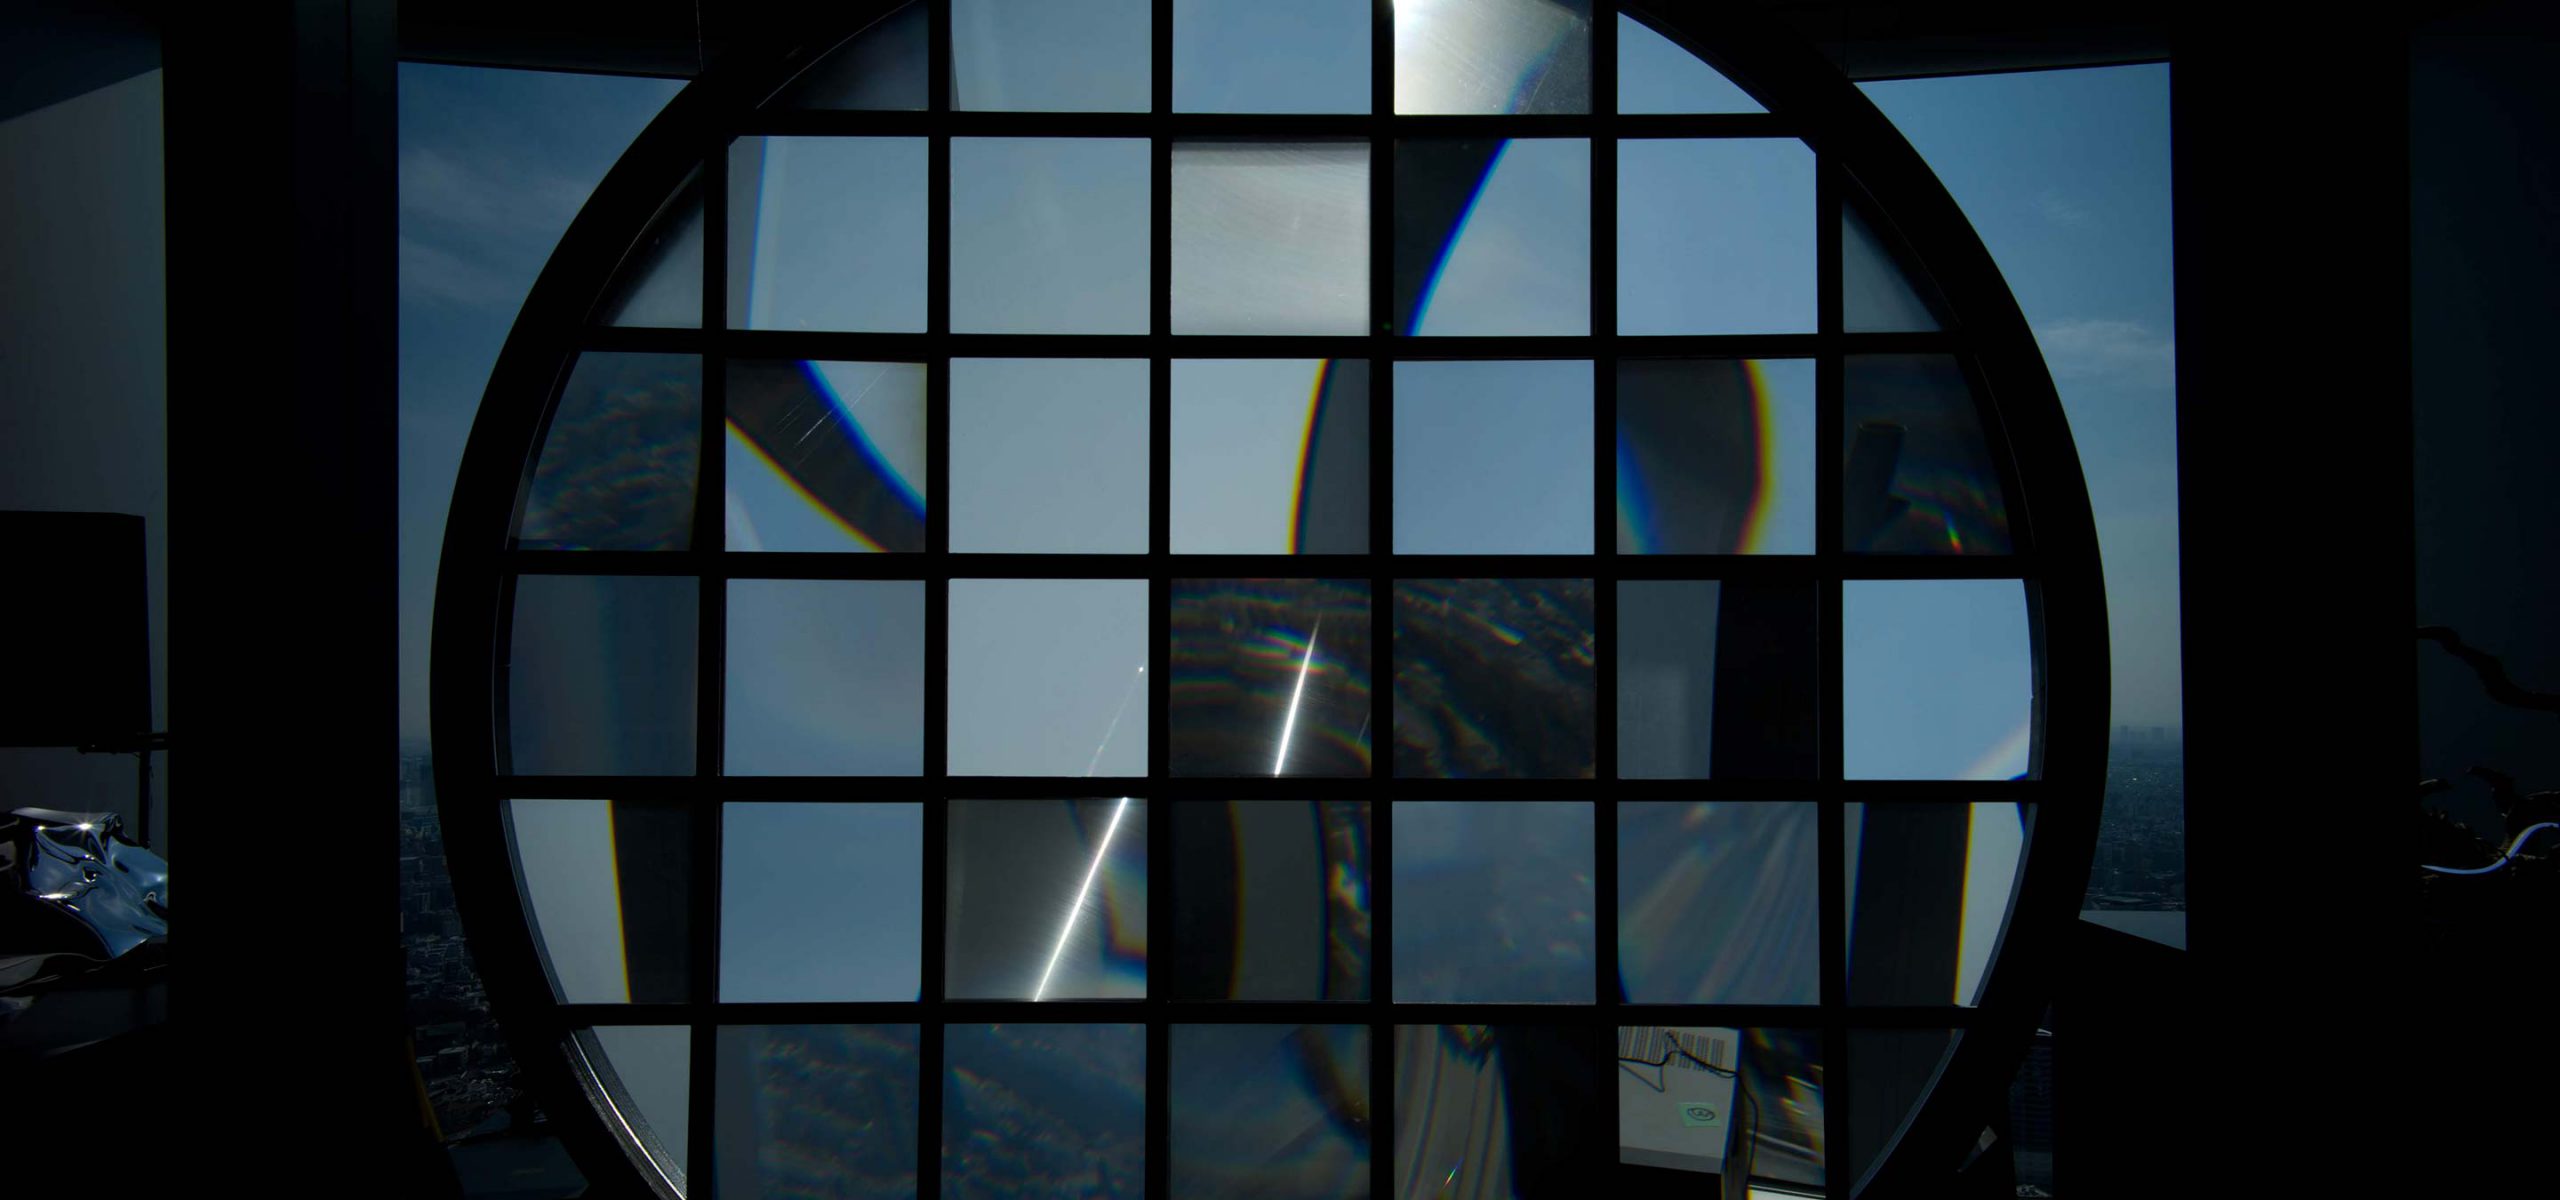 焦点の散らばった窓